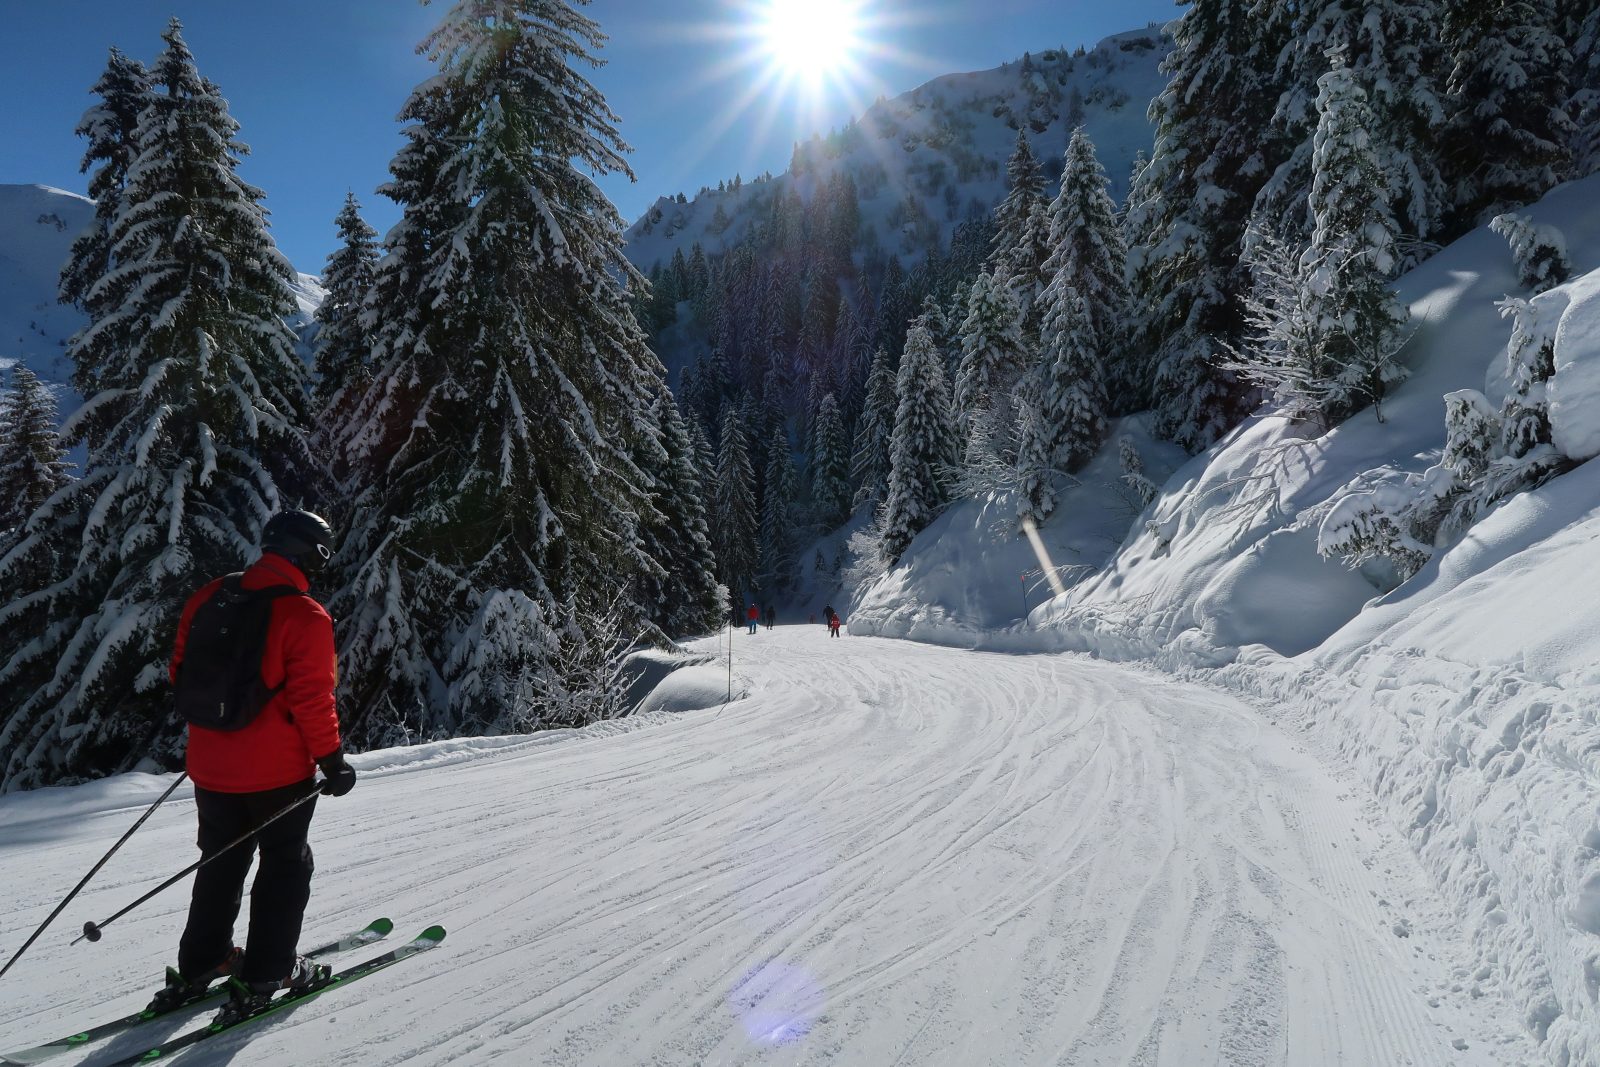 Top 5 Ski Resorts for Intermediate Skiers in France